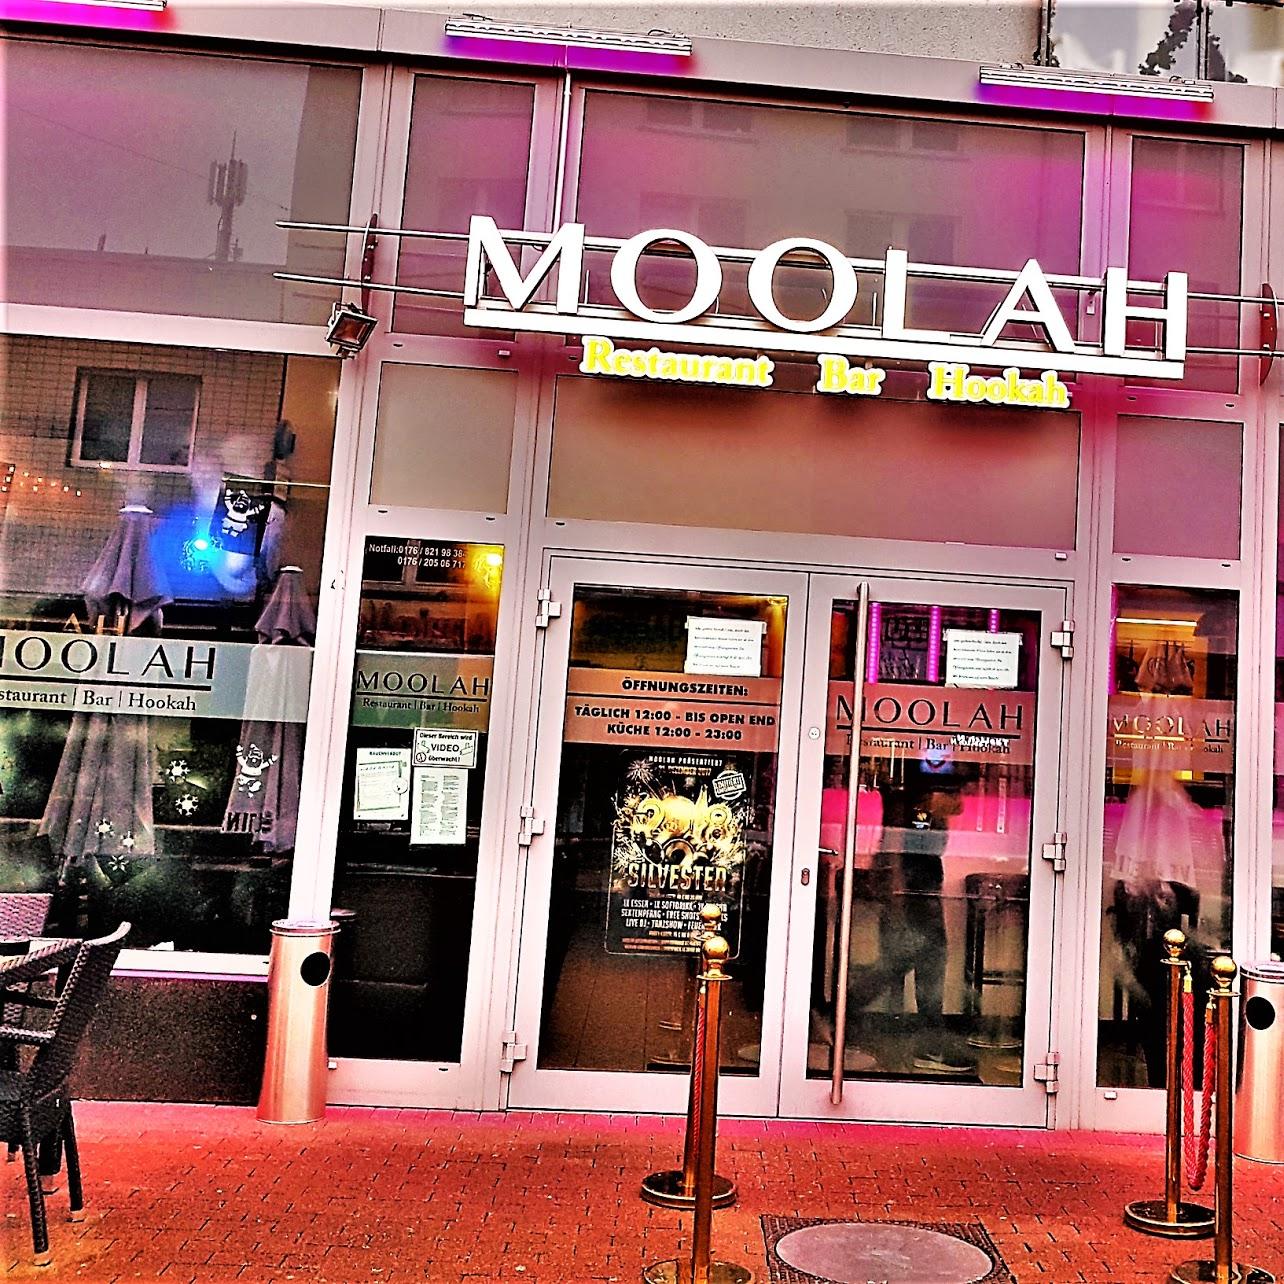 Restaurant "Moolah-" in Gelsenkirchen